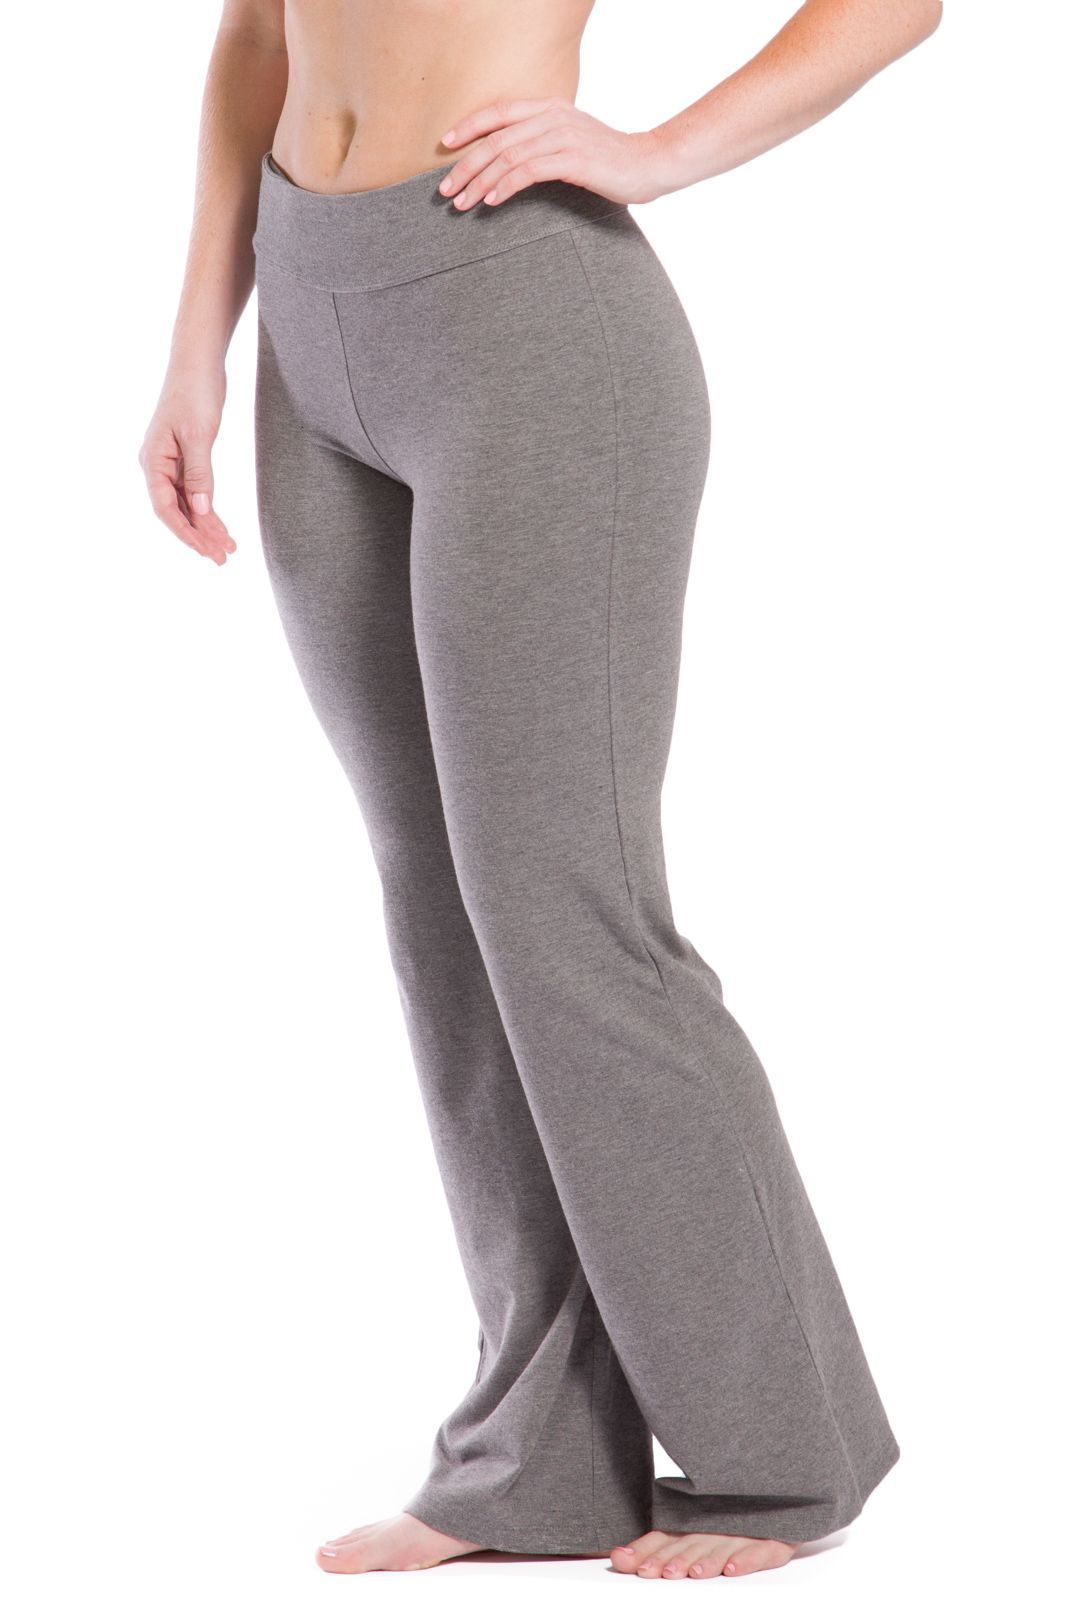 bootcut yoga pants short length